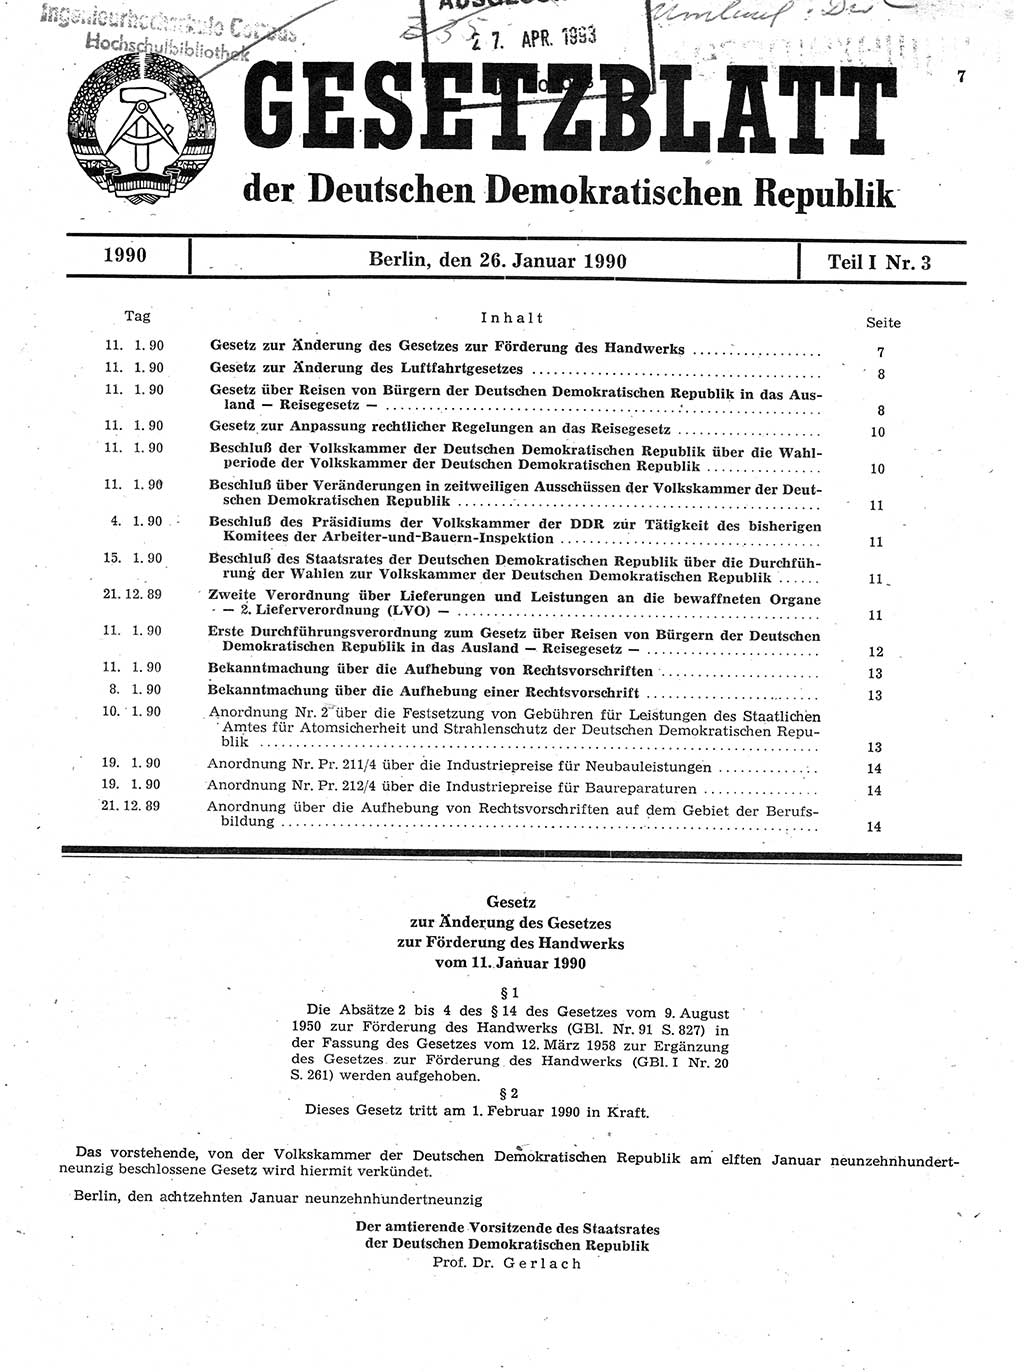 Gesetzblatt (GBl.) der Deutschen Demokratischen Republik (DDR) Teil Ⅰ 1990, Seite 7 (GBl. DDR Ⅰ 1990, S. 7)